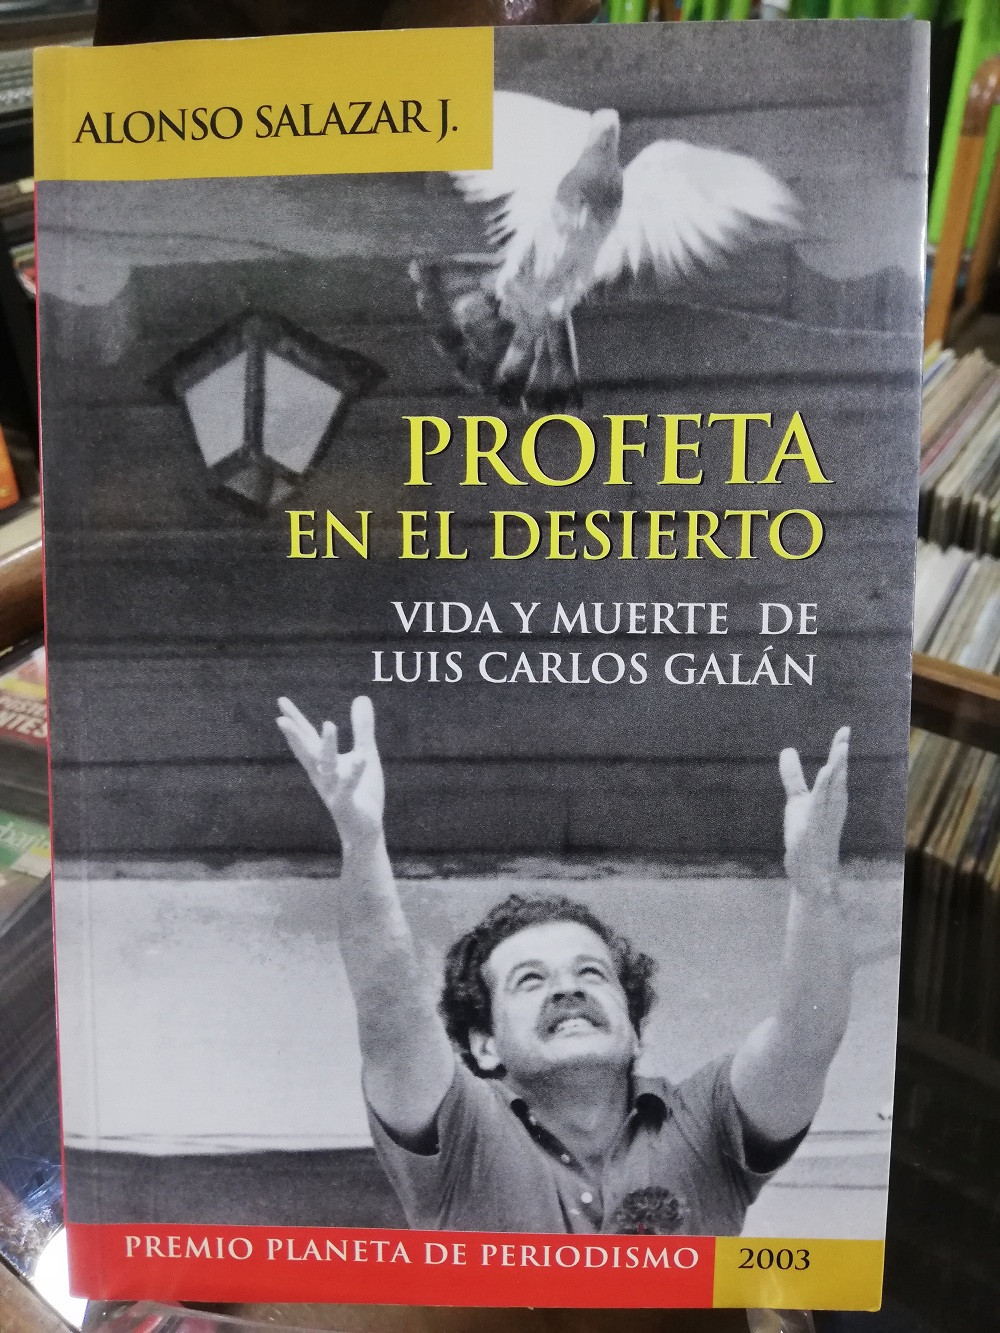 Imagen PROFETA EN EL DESIERTO, VIDA Y MUERTE DE LUIS CARLOS GALÁN - ALONSO SALAZAR 1